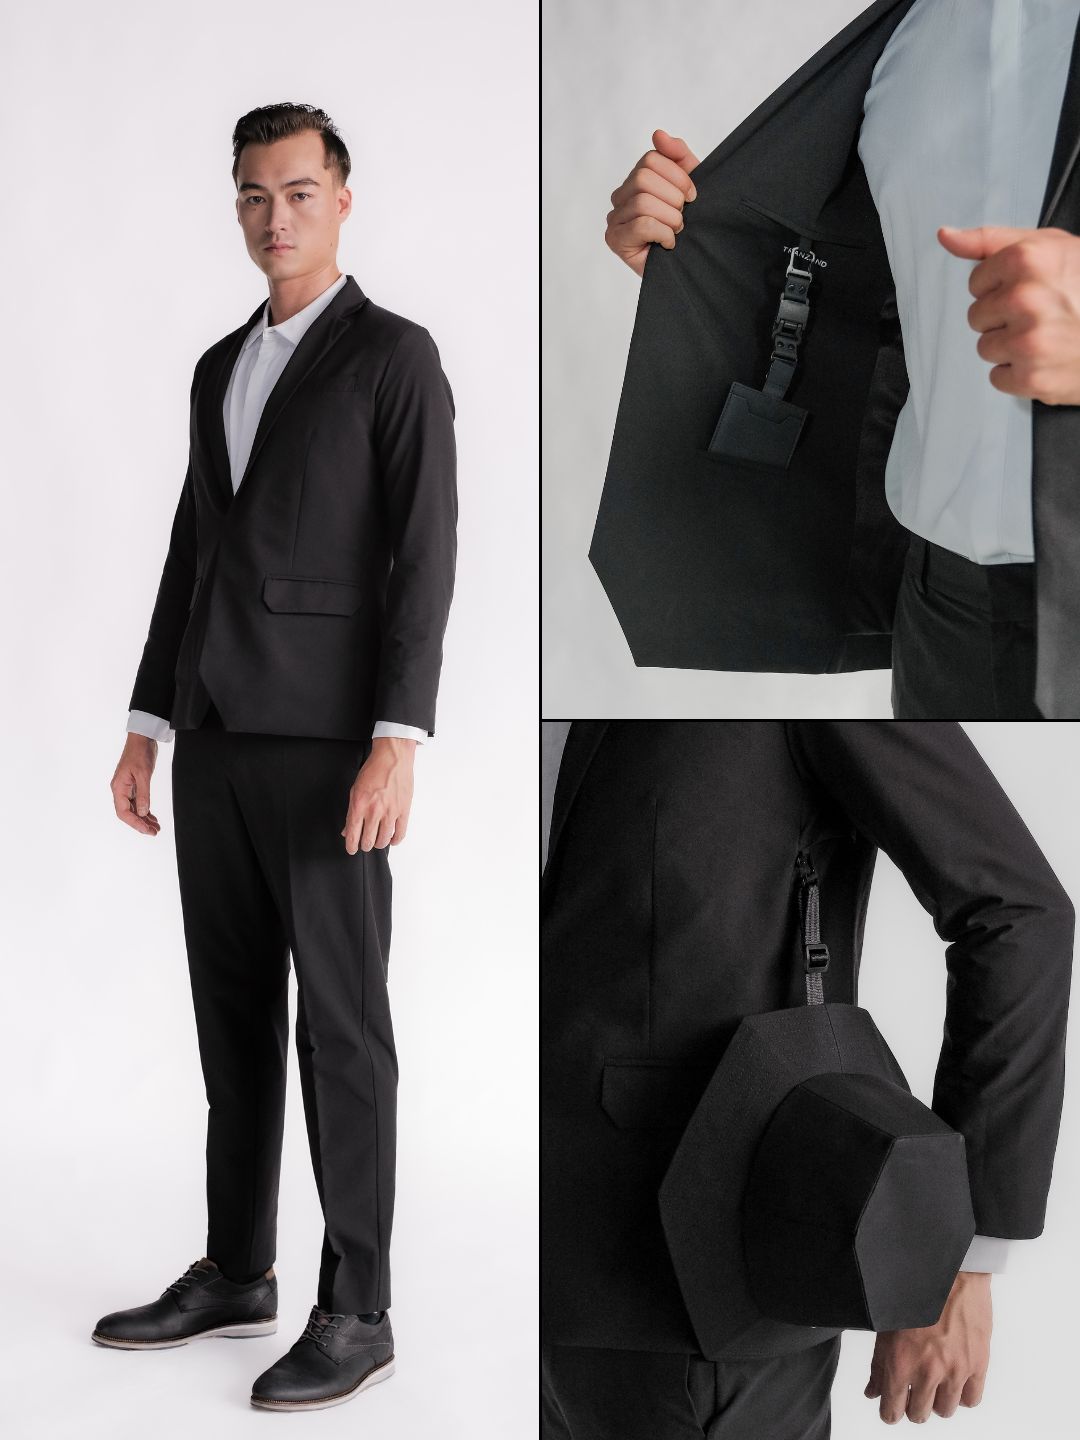 Ultra Suit 3.0 單排扣套裝組合 經典黑 + M-system - TRANZEND